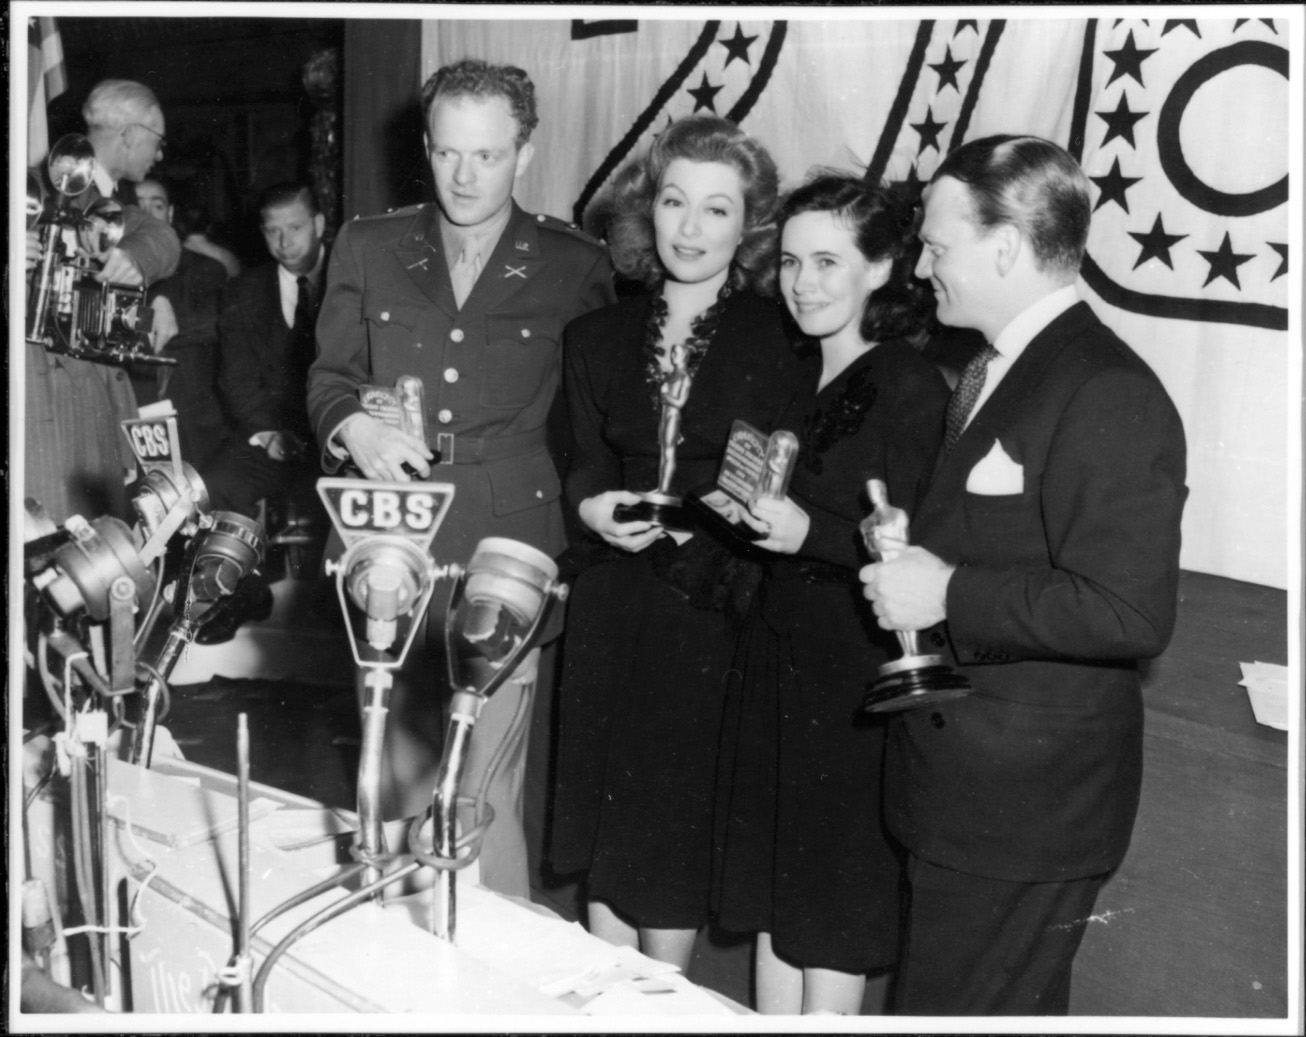 1942 Oscar ceremony photo